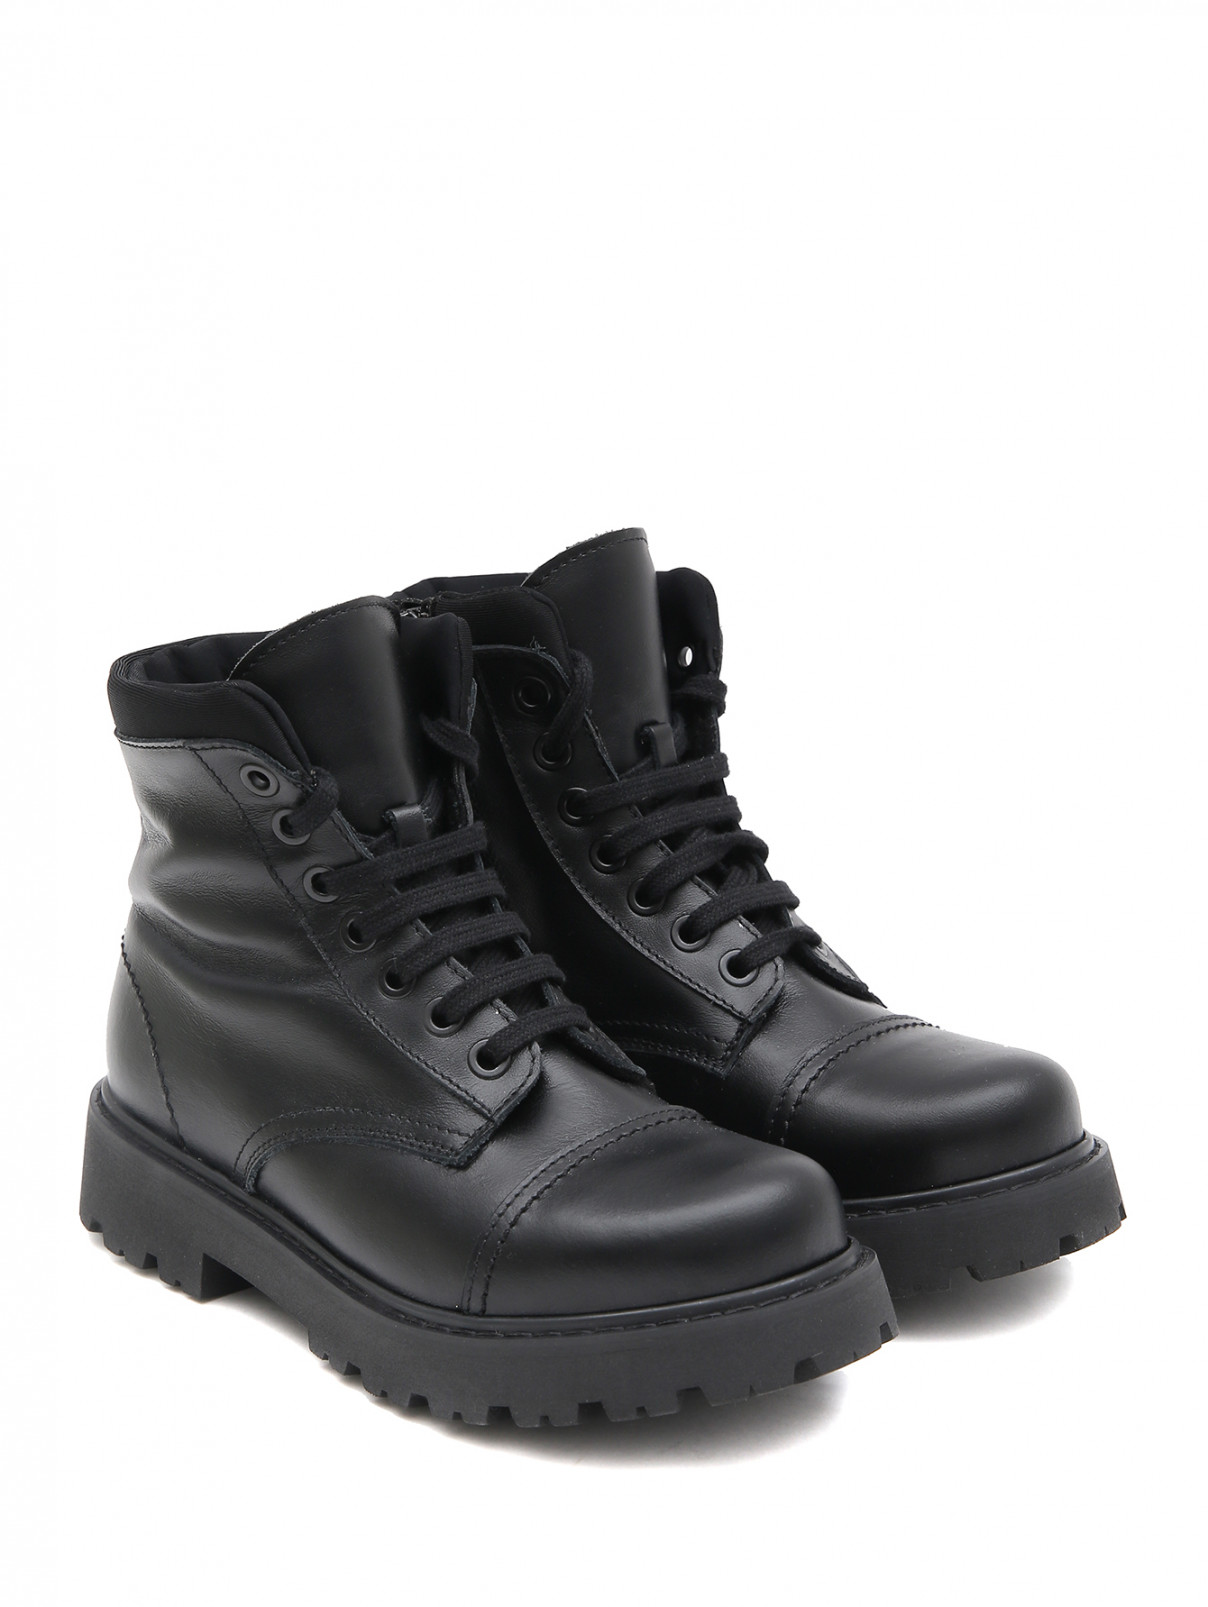 Высокие ботинки на шнуровке MONTELPARE TRADITION  –  Общий вид  – Цвет:  Черный